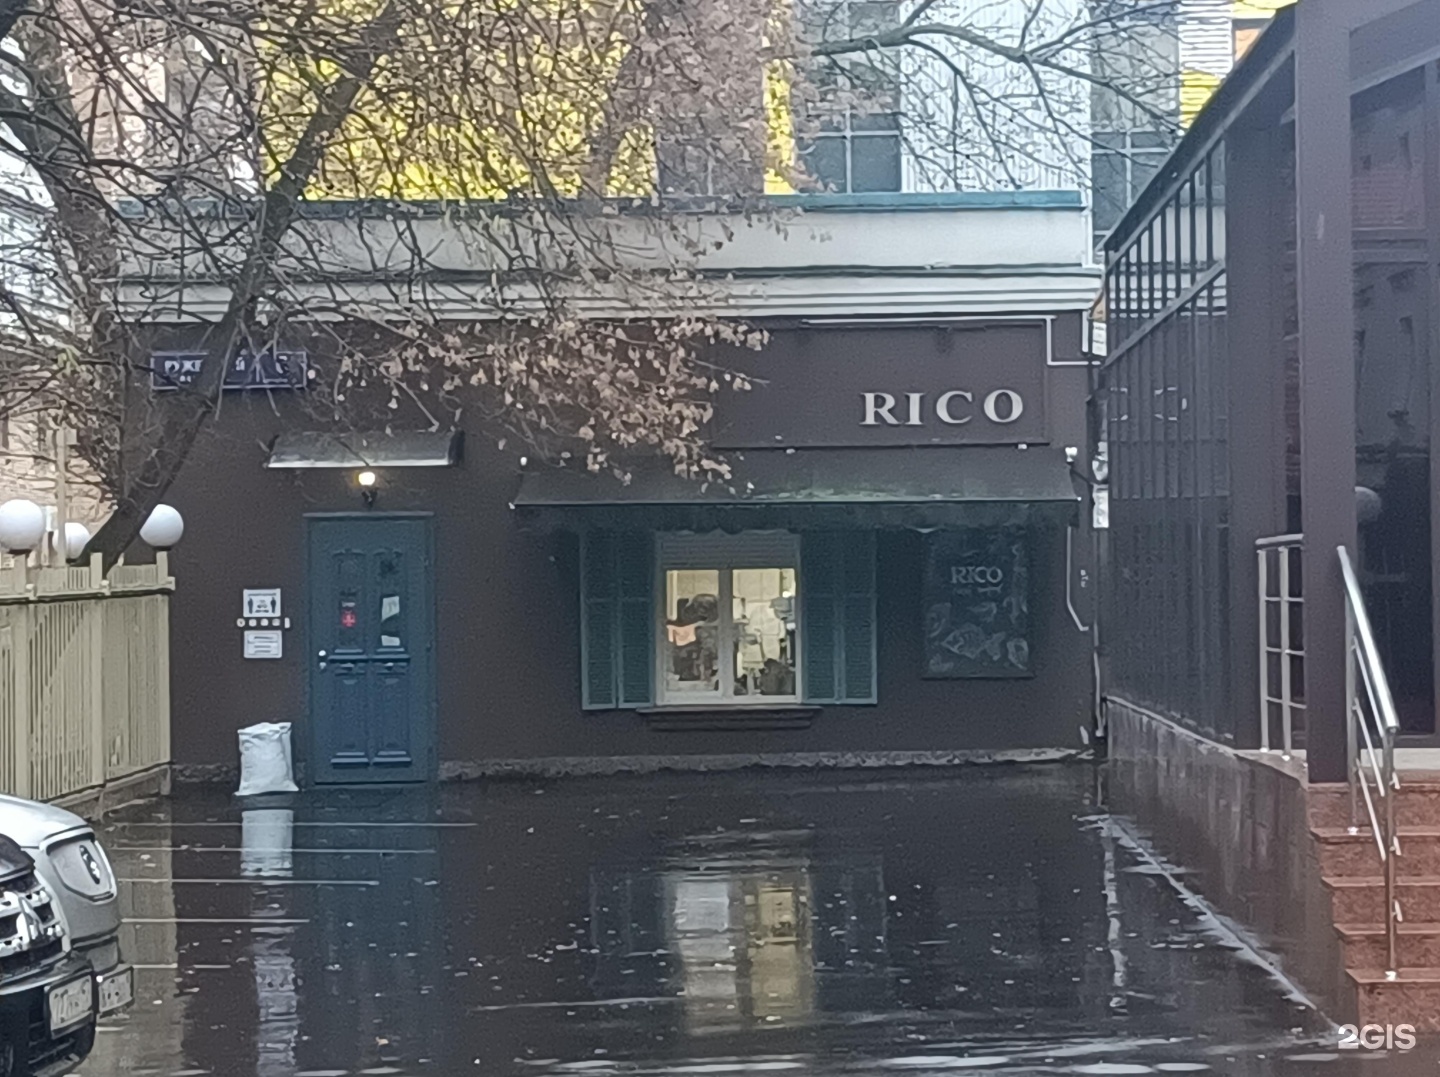 Rico ge. Ресторан Рико ружейный переулок. Rico ресторан Москва. Рико ресторан Москва ружейный переулок меню. Рикко ресторан Москва.